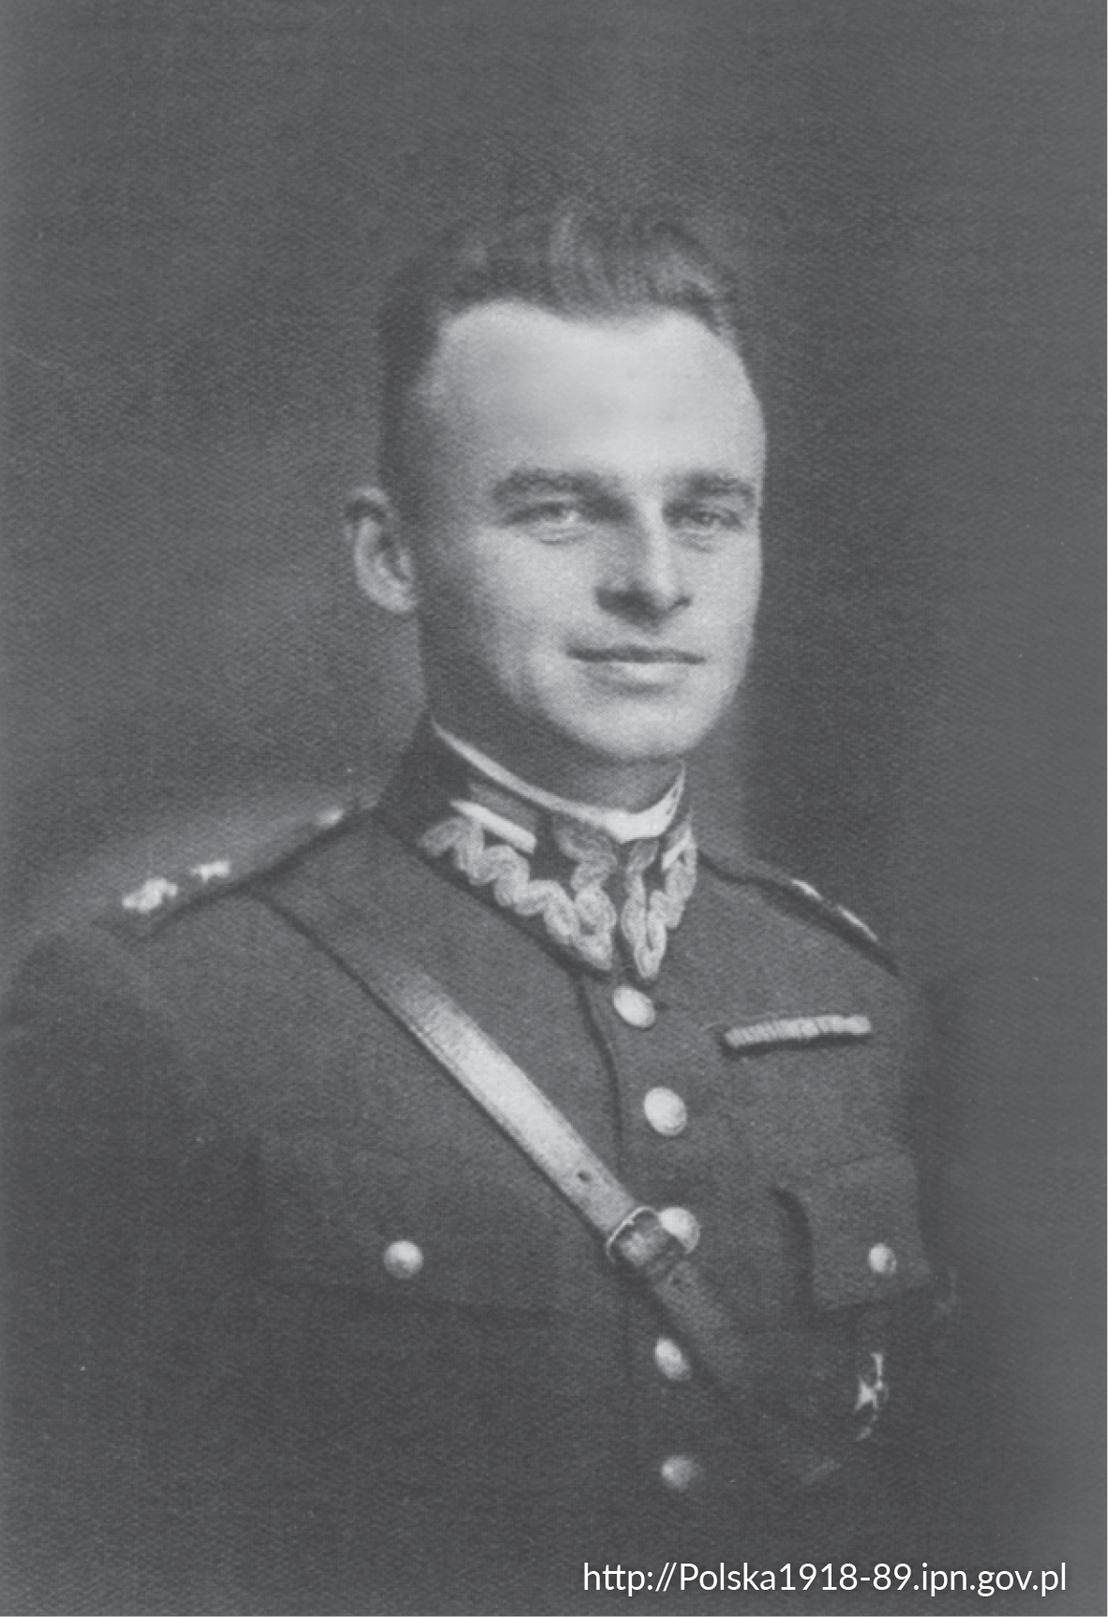 Przedwojenna fotografia Witolda Pileckiego jako ppor. kawalerii.  